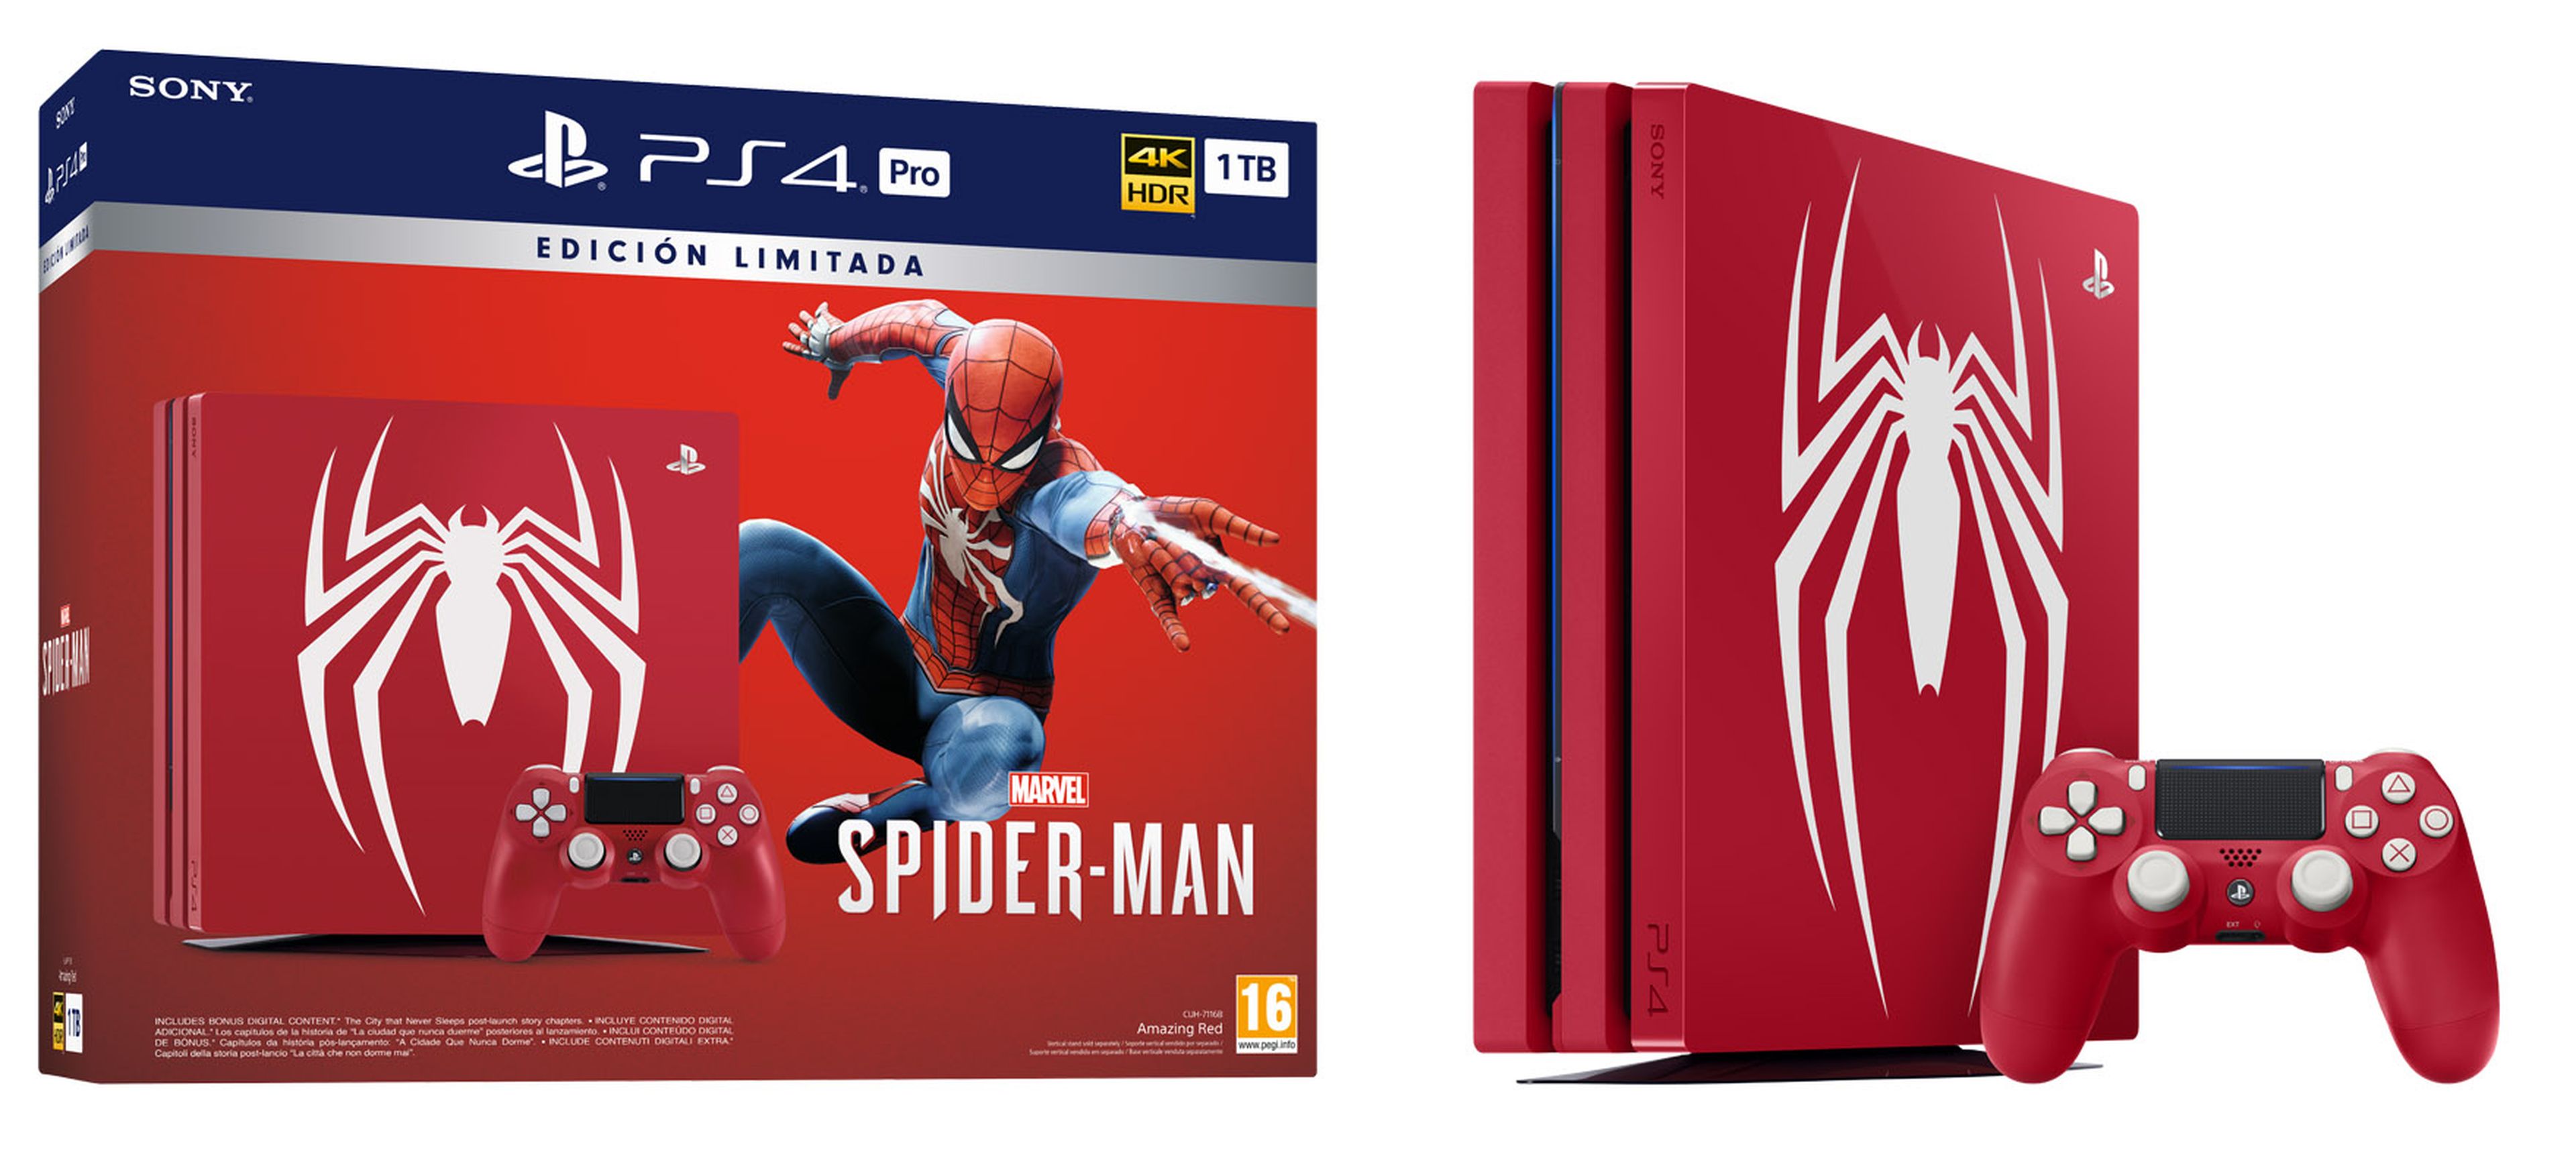 Spider-Man Compras PS4 PRO OK